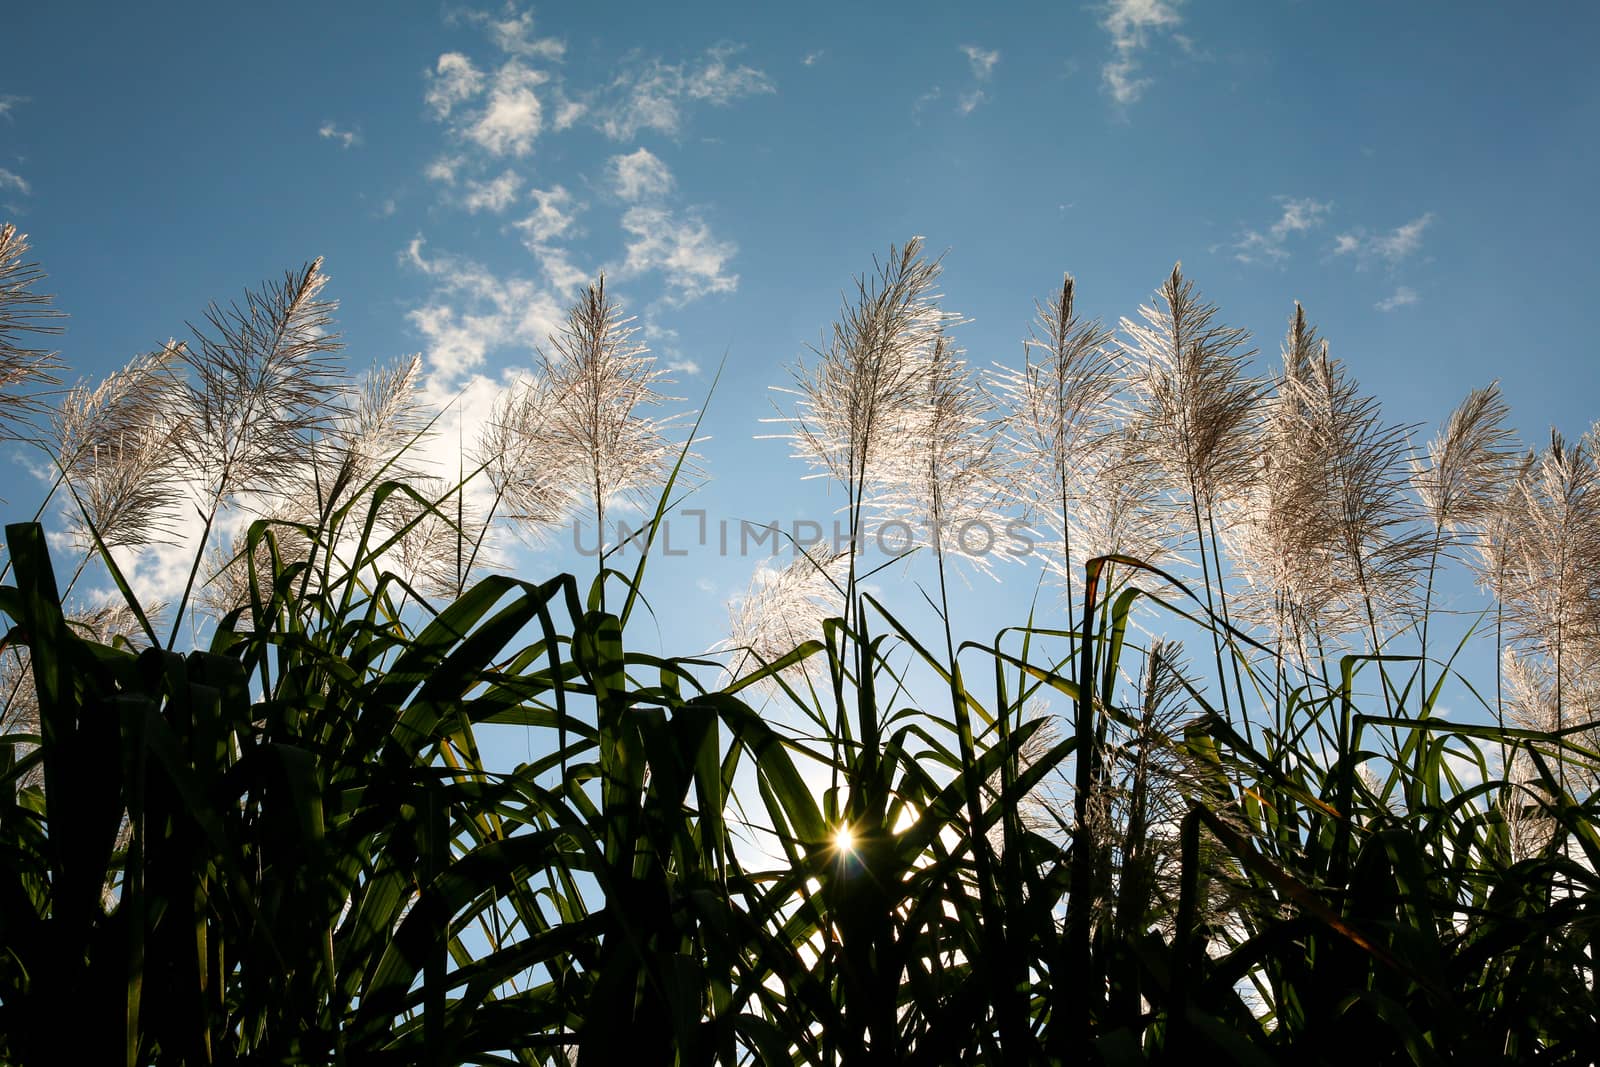 Sugar cane flower Sunrise by N_u_T